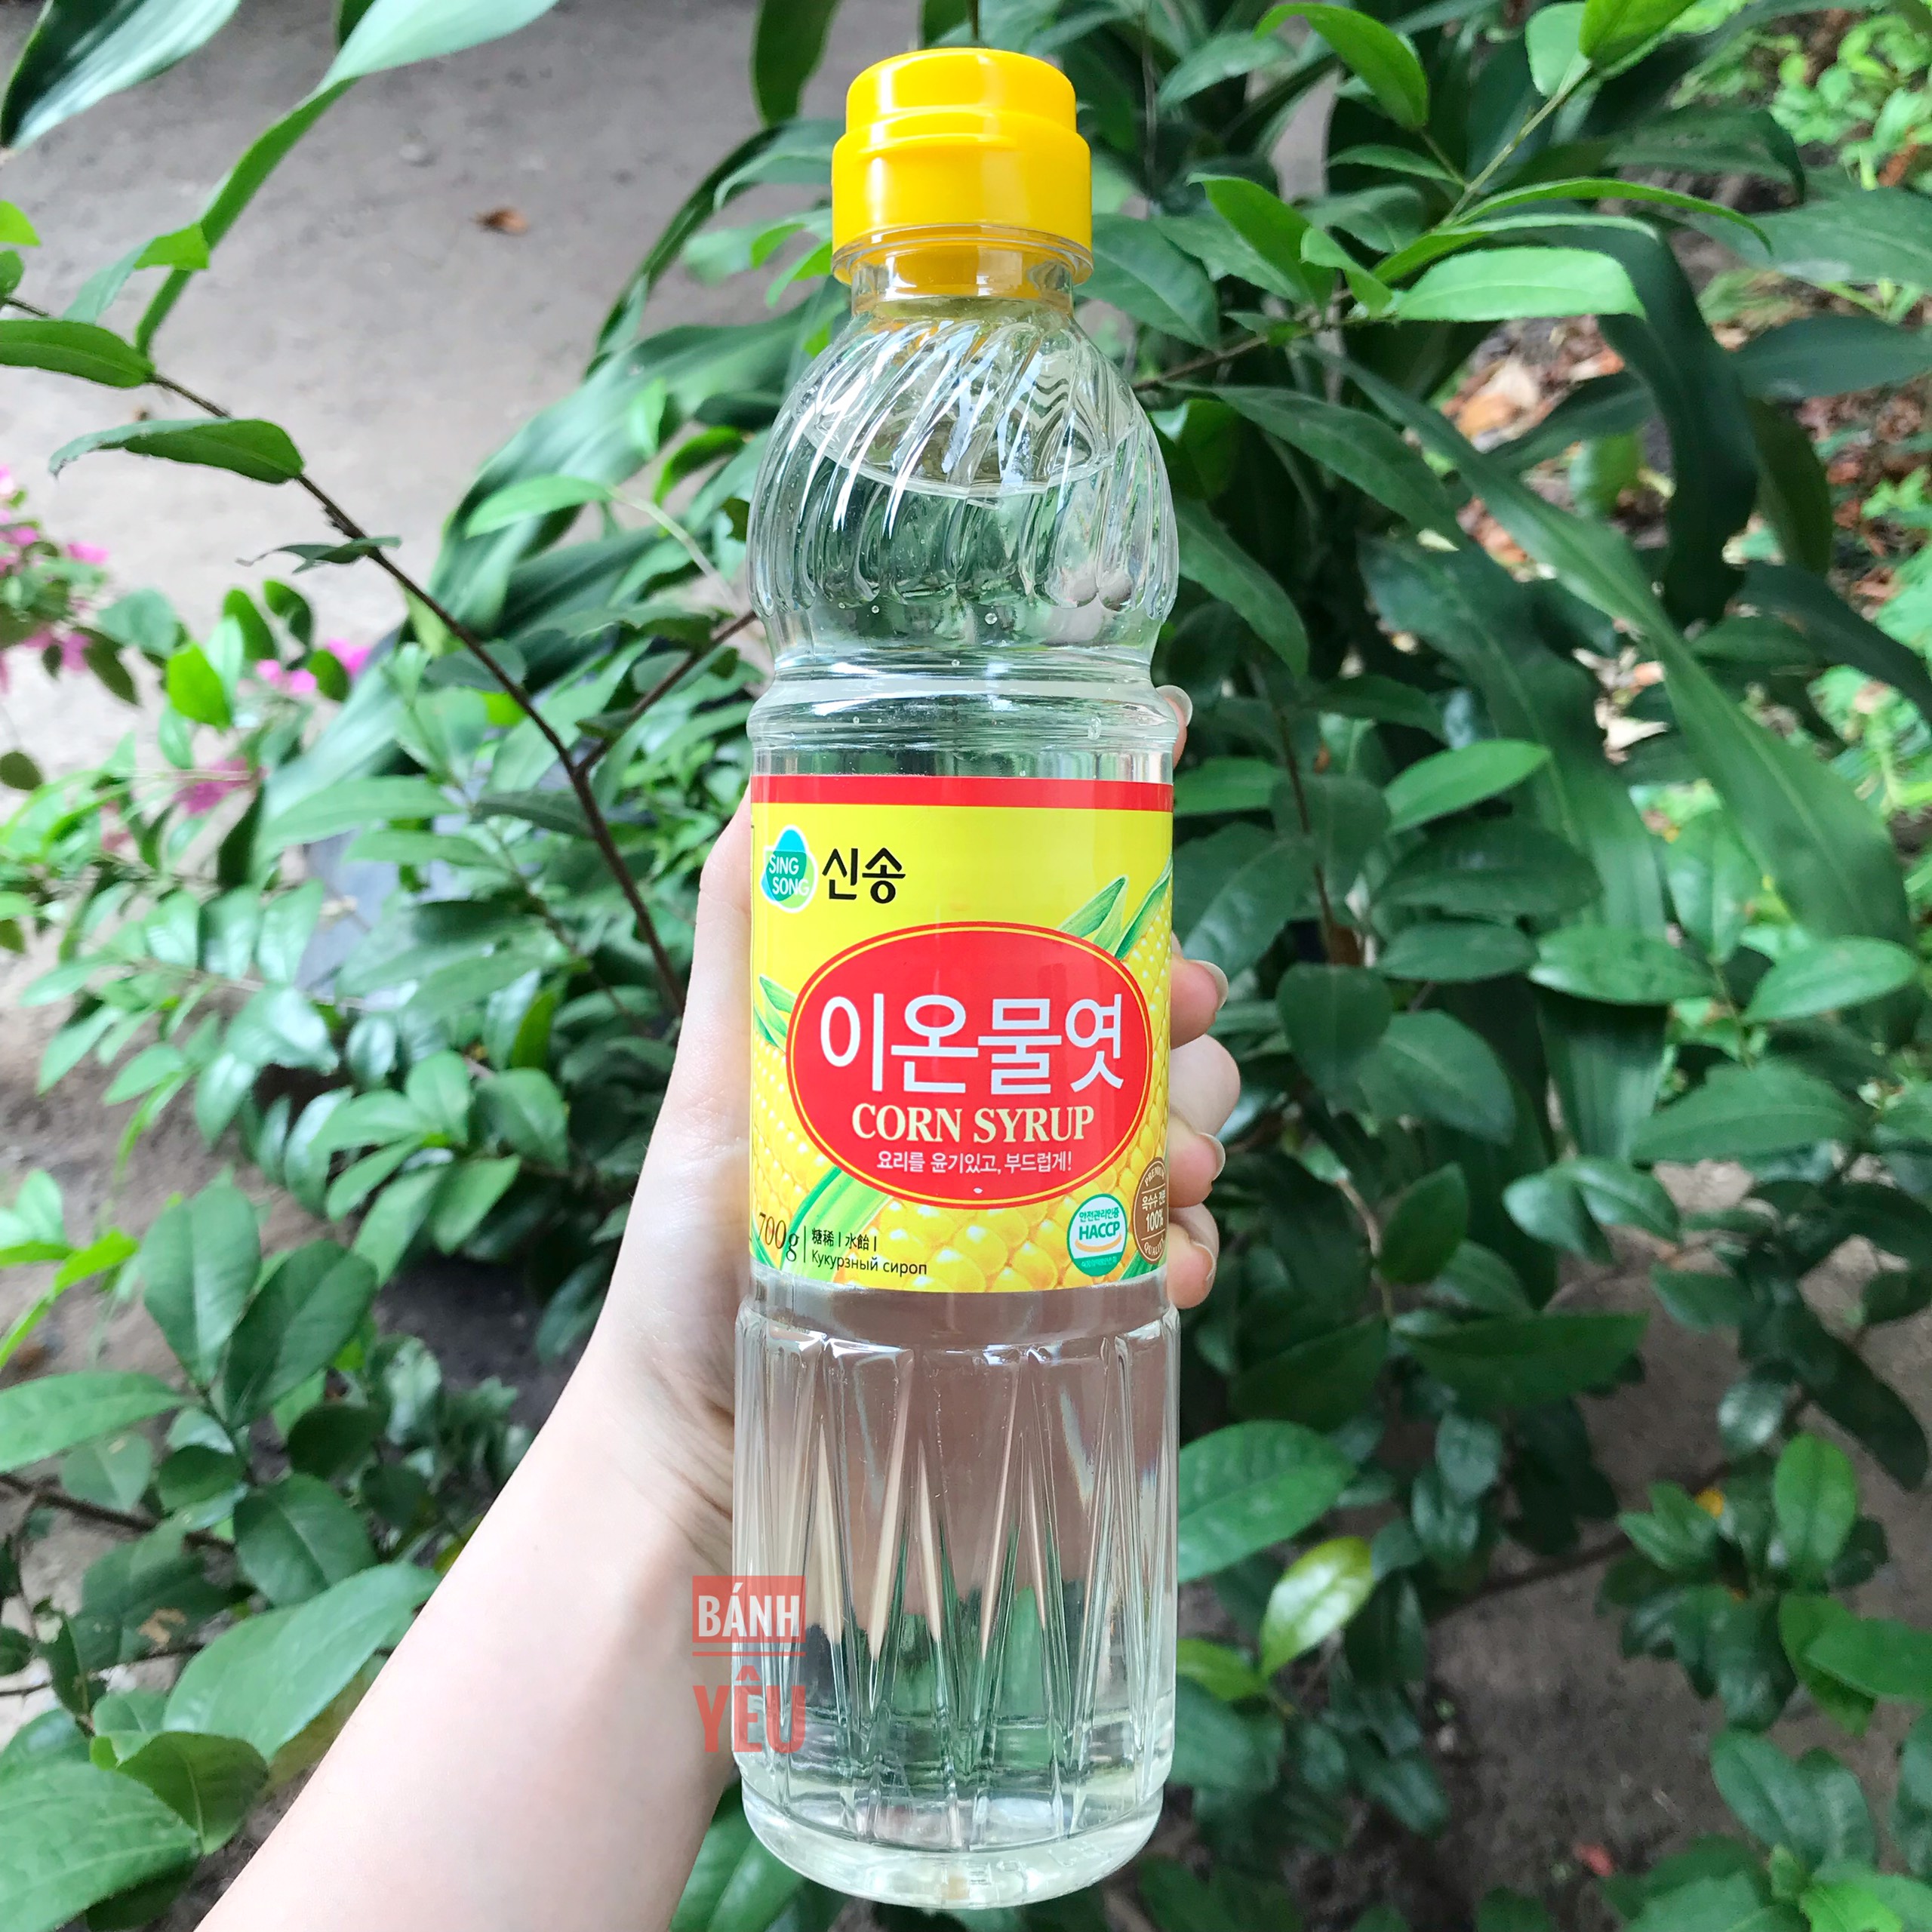 Siro bắp ngô Hàn Quốc SingSong 700g - Corn Syrup 700g